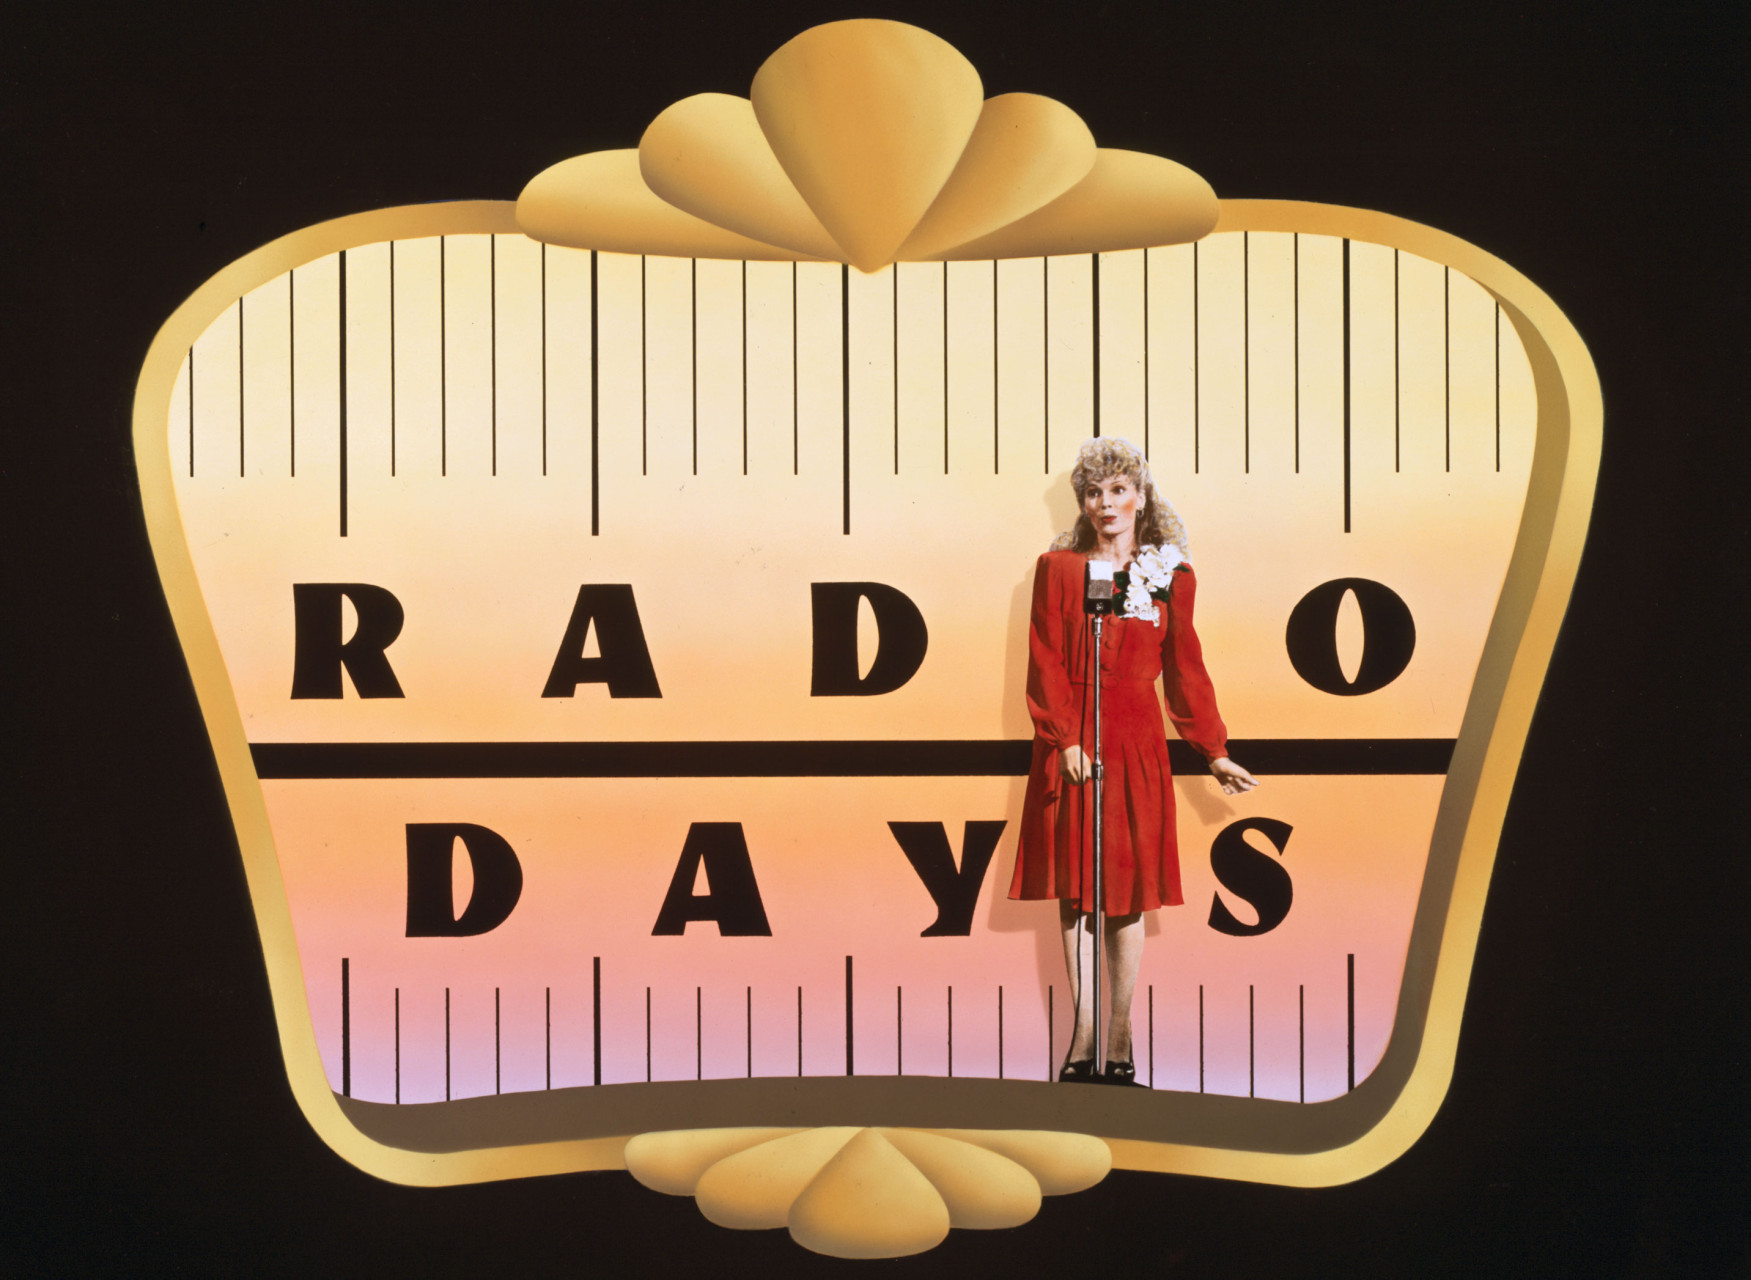 Τετραήμερο Κινηματογραφικό Φεστιβάλ "RADIO DAYS", με ταινίες που ανέδειξαν τη δύναμη και την επίδραση του ραδιοφώνου στη ζωή μας